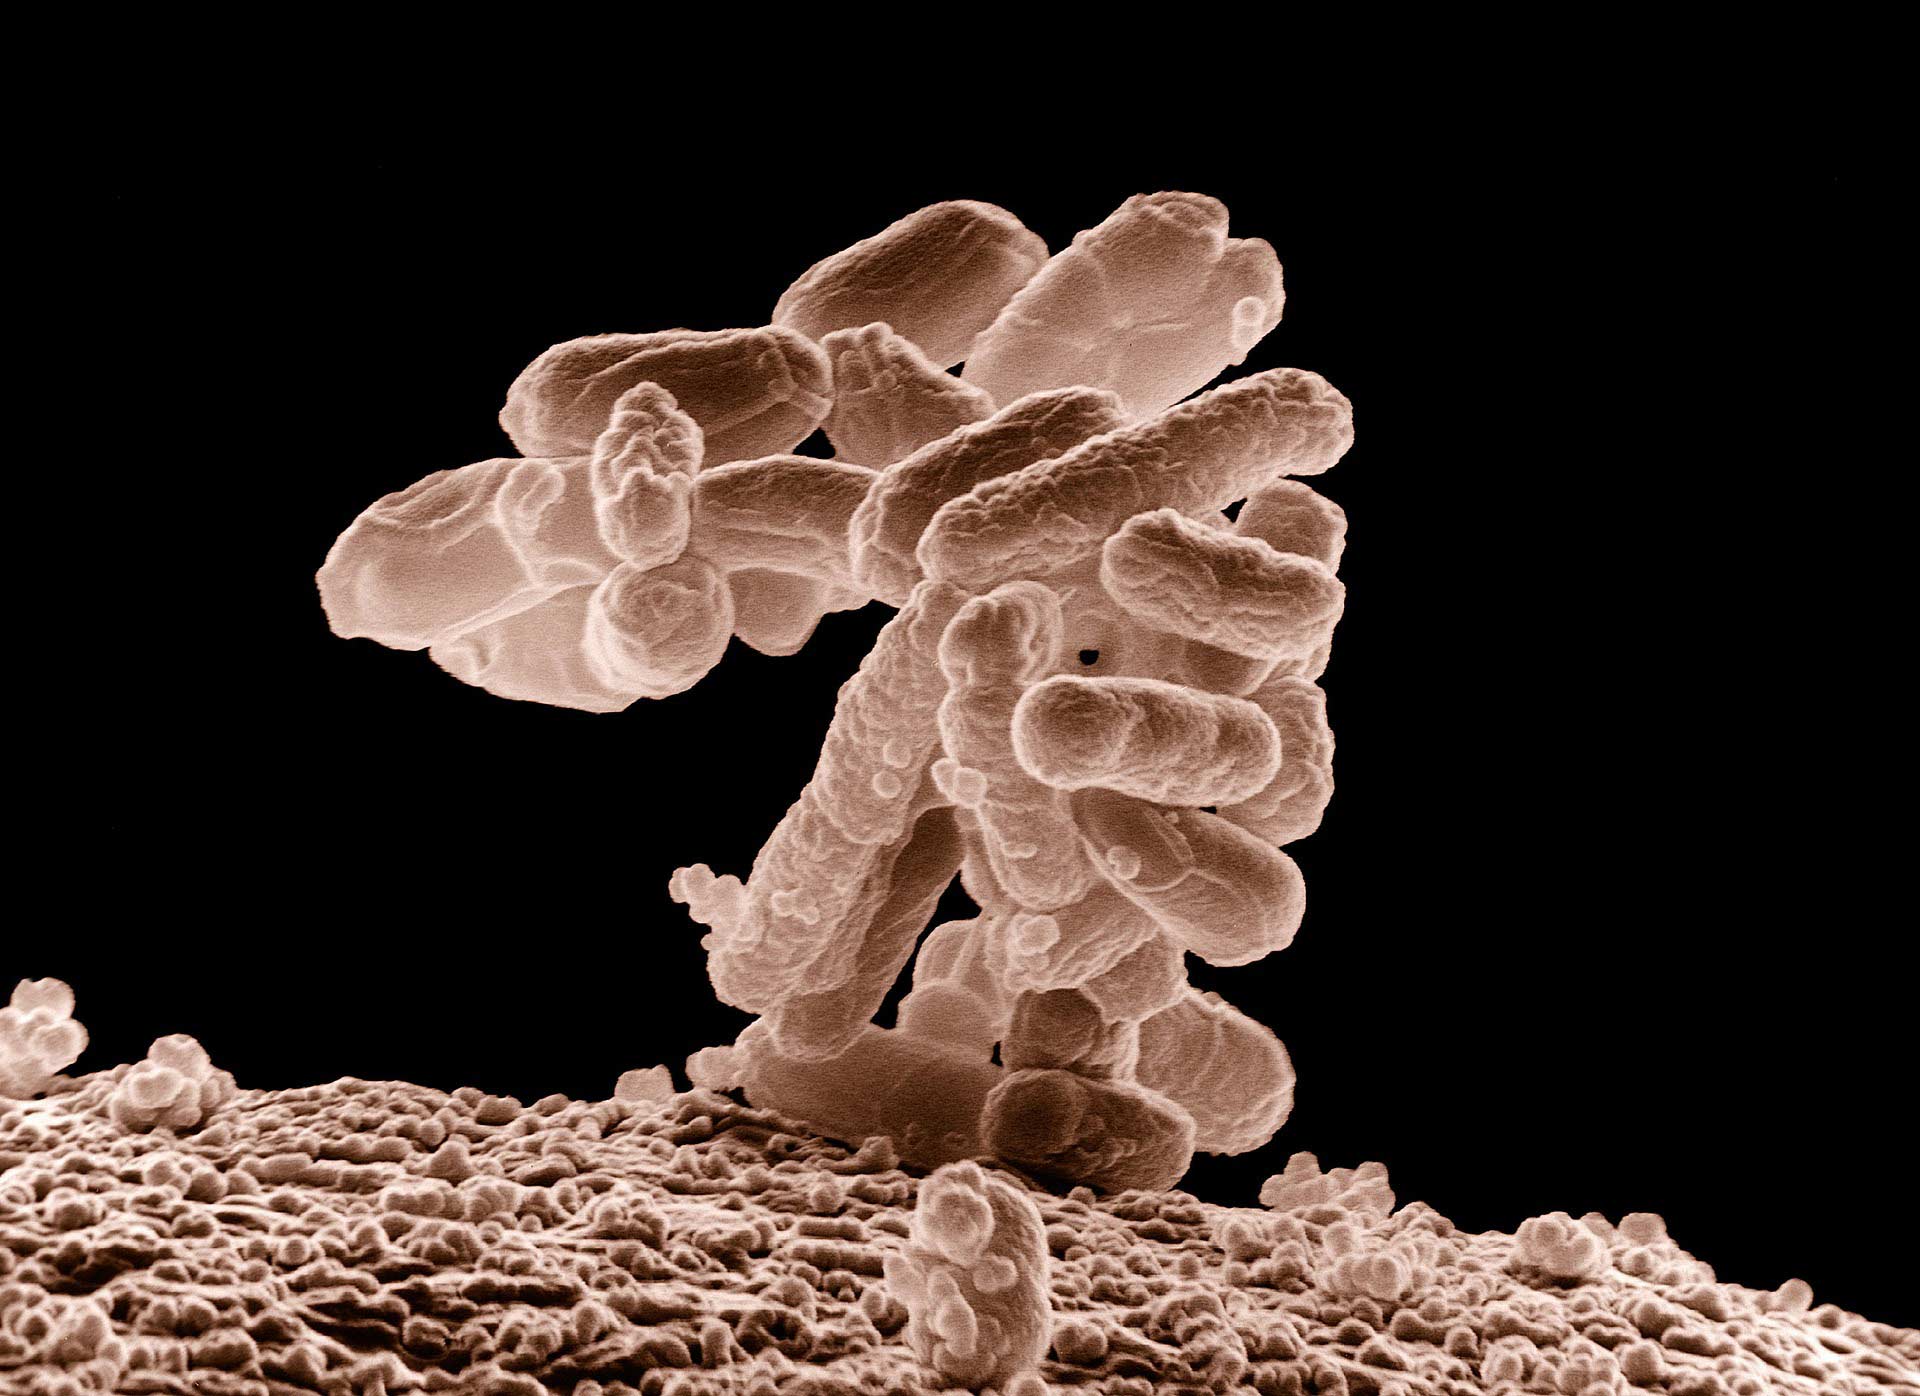 E. Coli bacterium